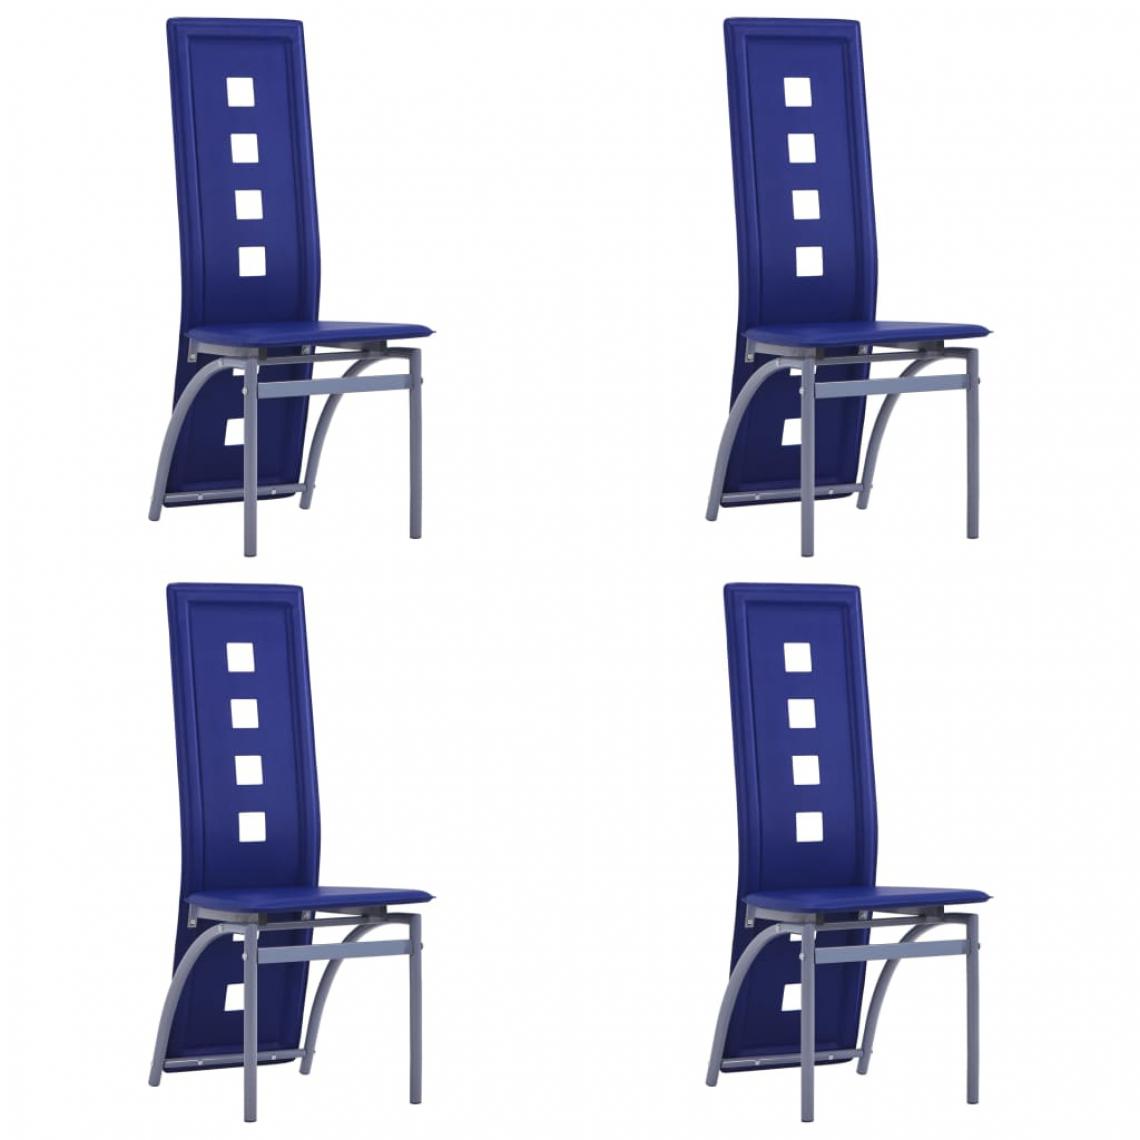 Icaverne - Joli Fauteuils et chaises edition Georgetown Chaises de salle à manger 4 pcs Bleu Similicuir - Chaises